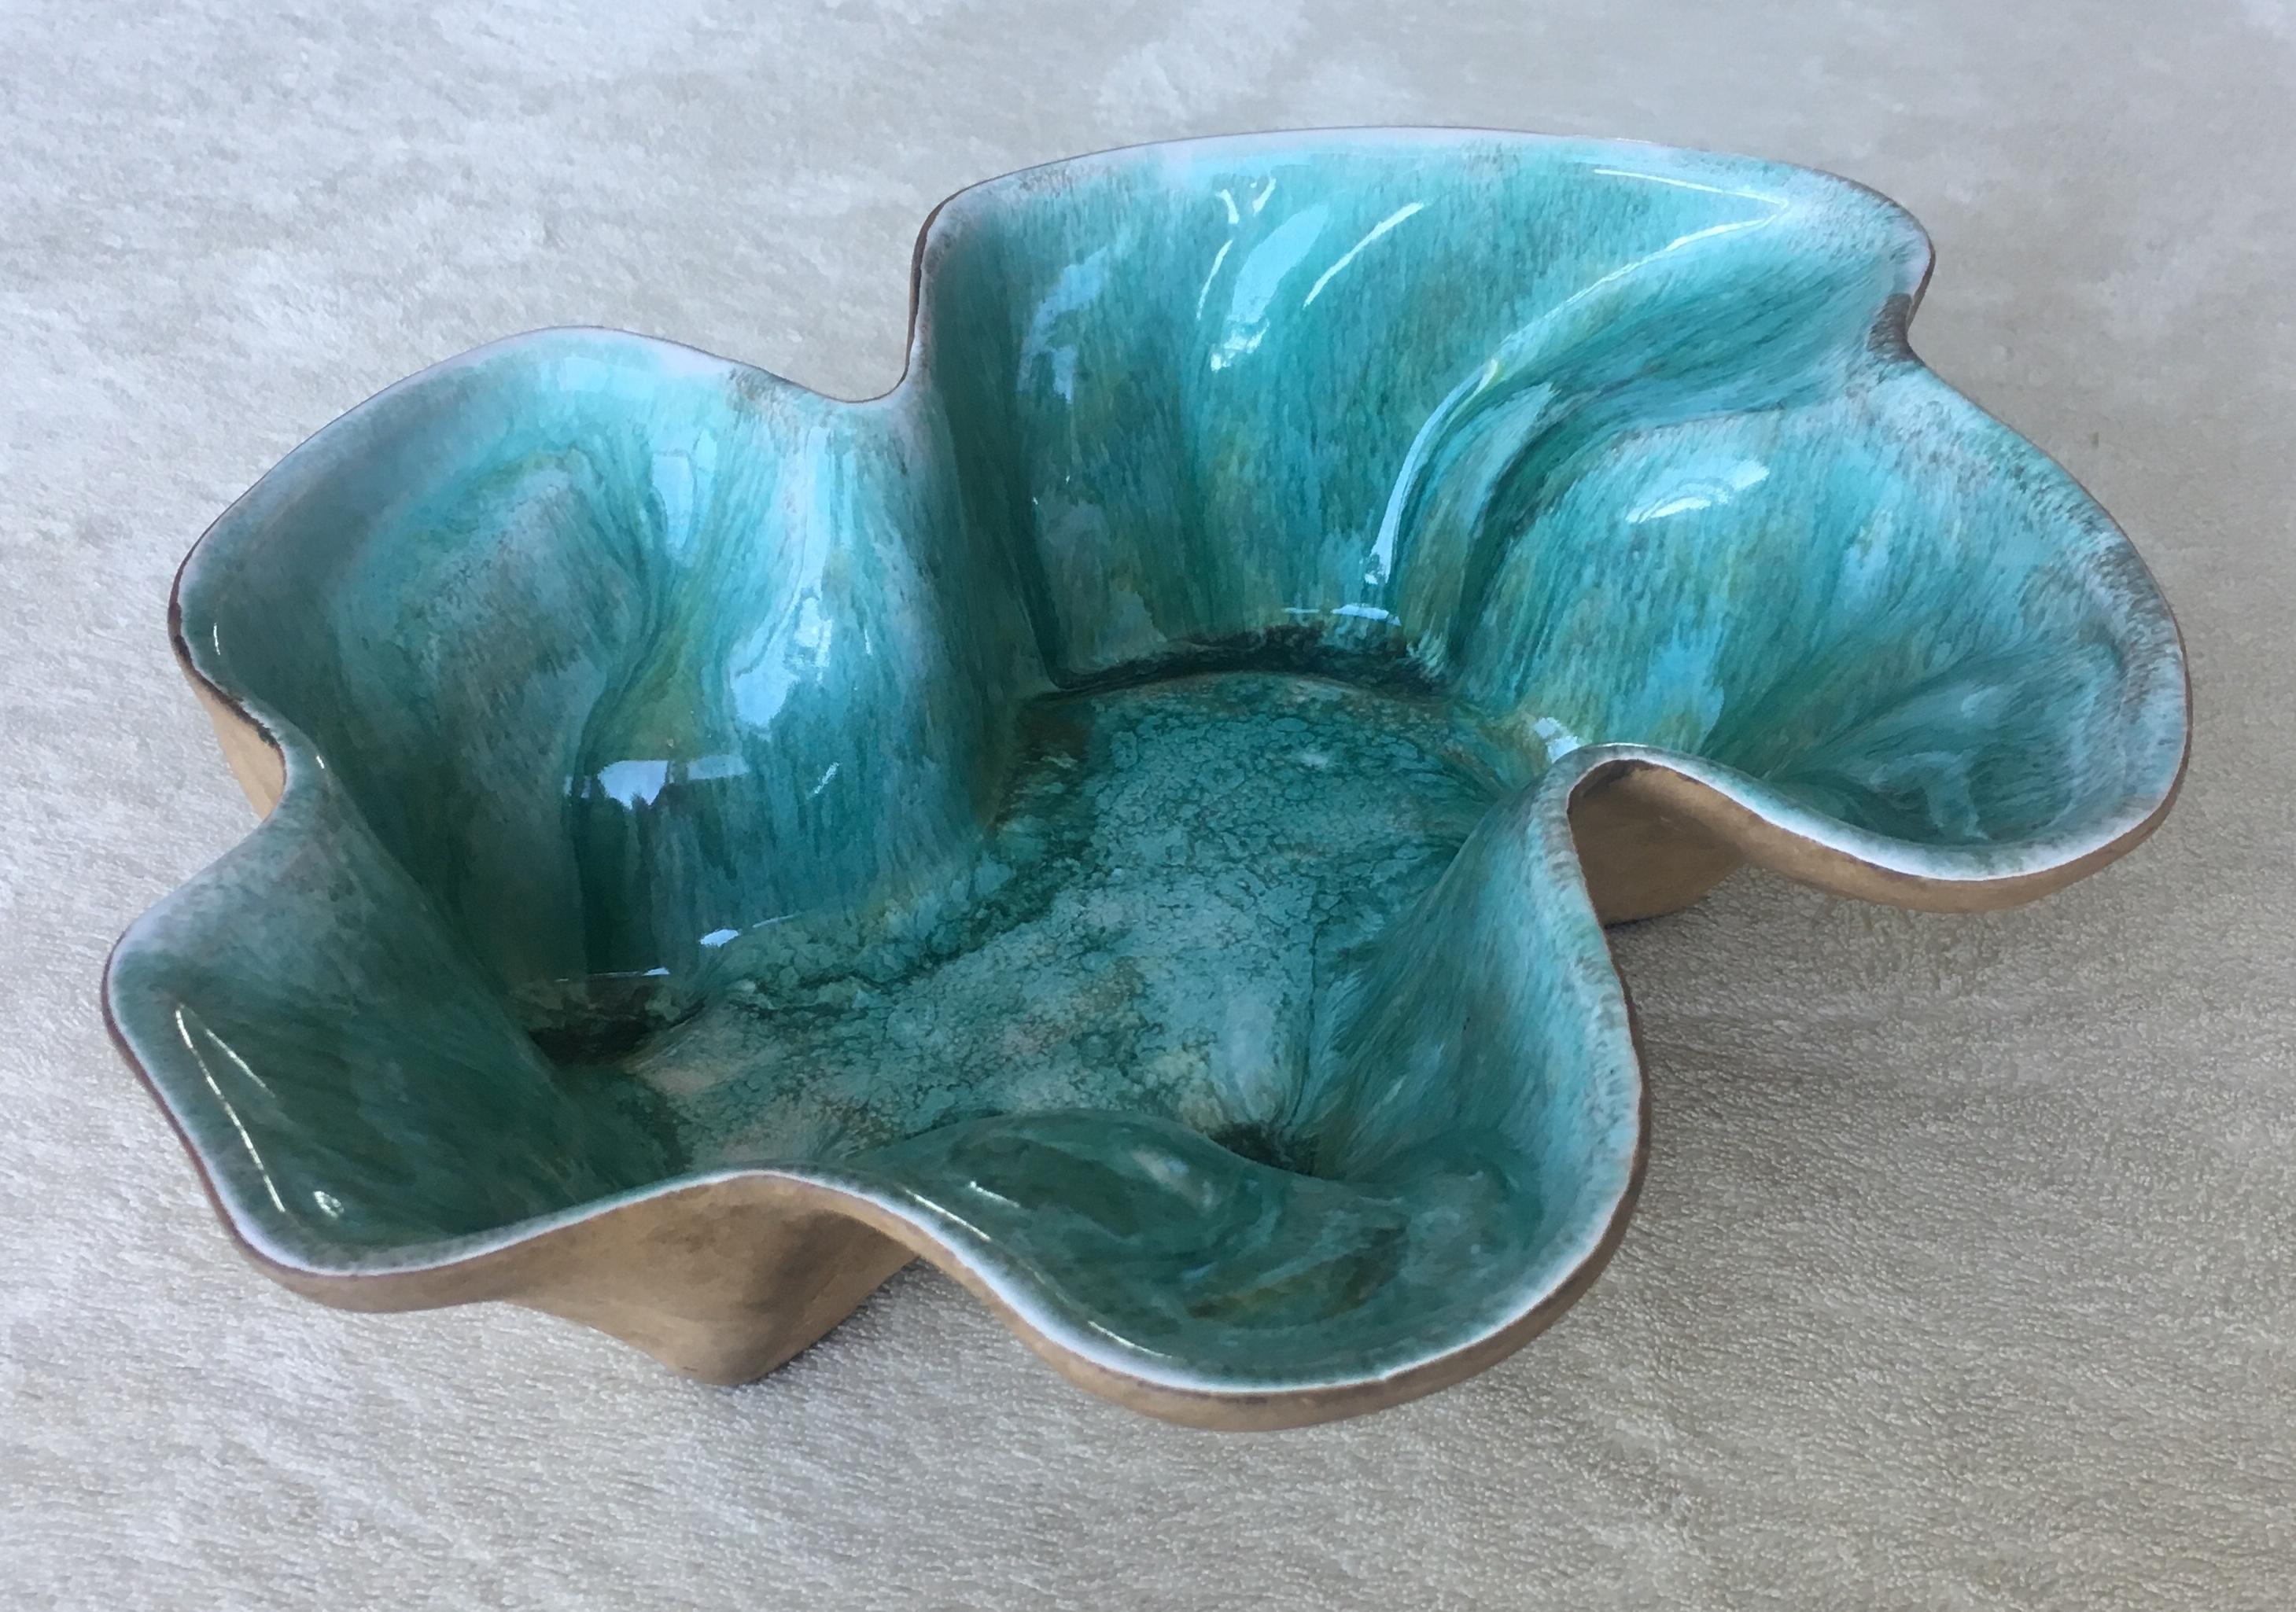 Atemberaubende naturalistische Keramikschüssel einer amerikanischen Keramikkünstlerin, Flora Eckert Hammat aus Tulsa, Oklahoma. Lebendige Farben, originelle organische Form. 

Signiert Hammat Original und nummeriert 326. Der Künstler stellte diese